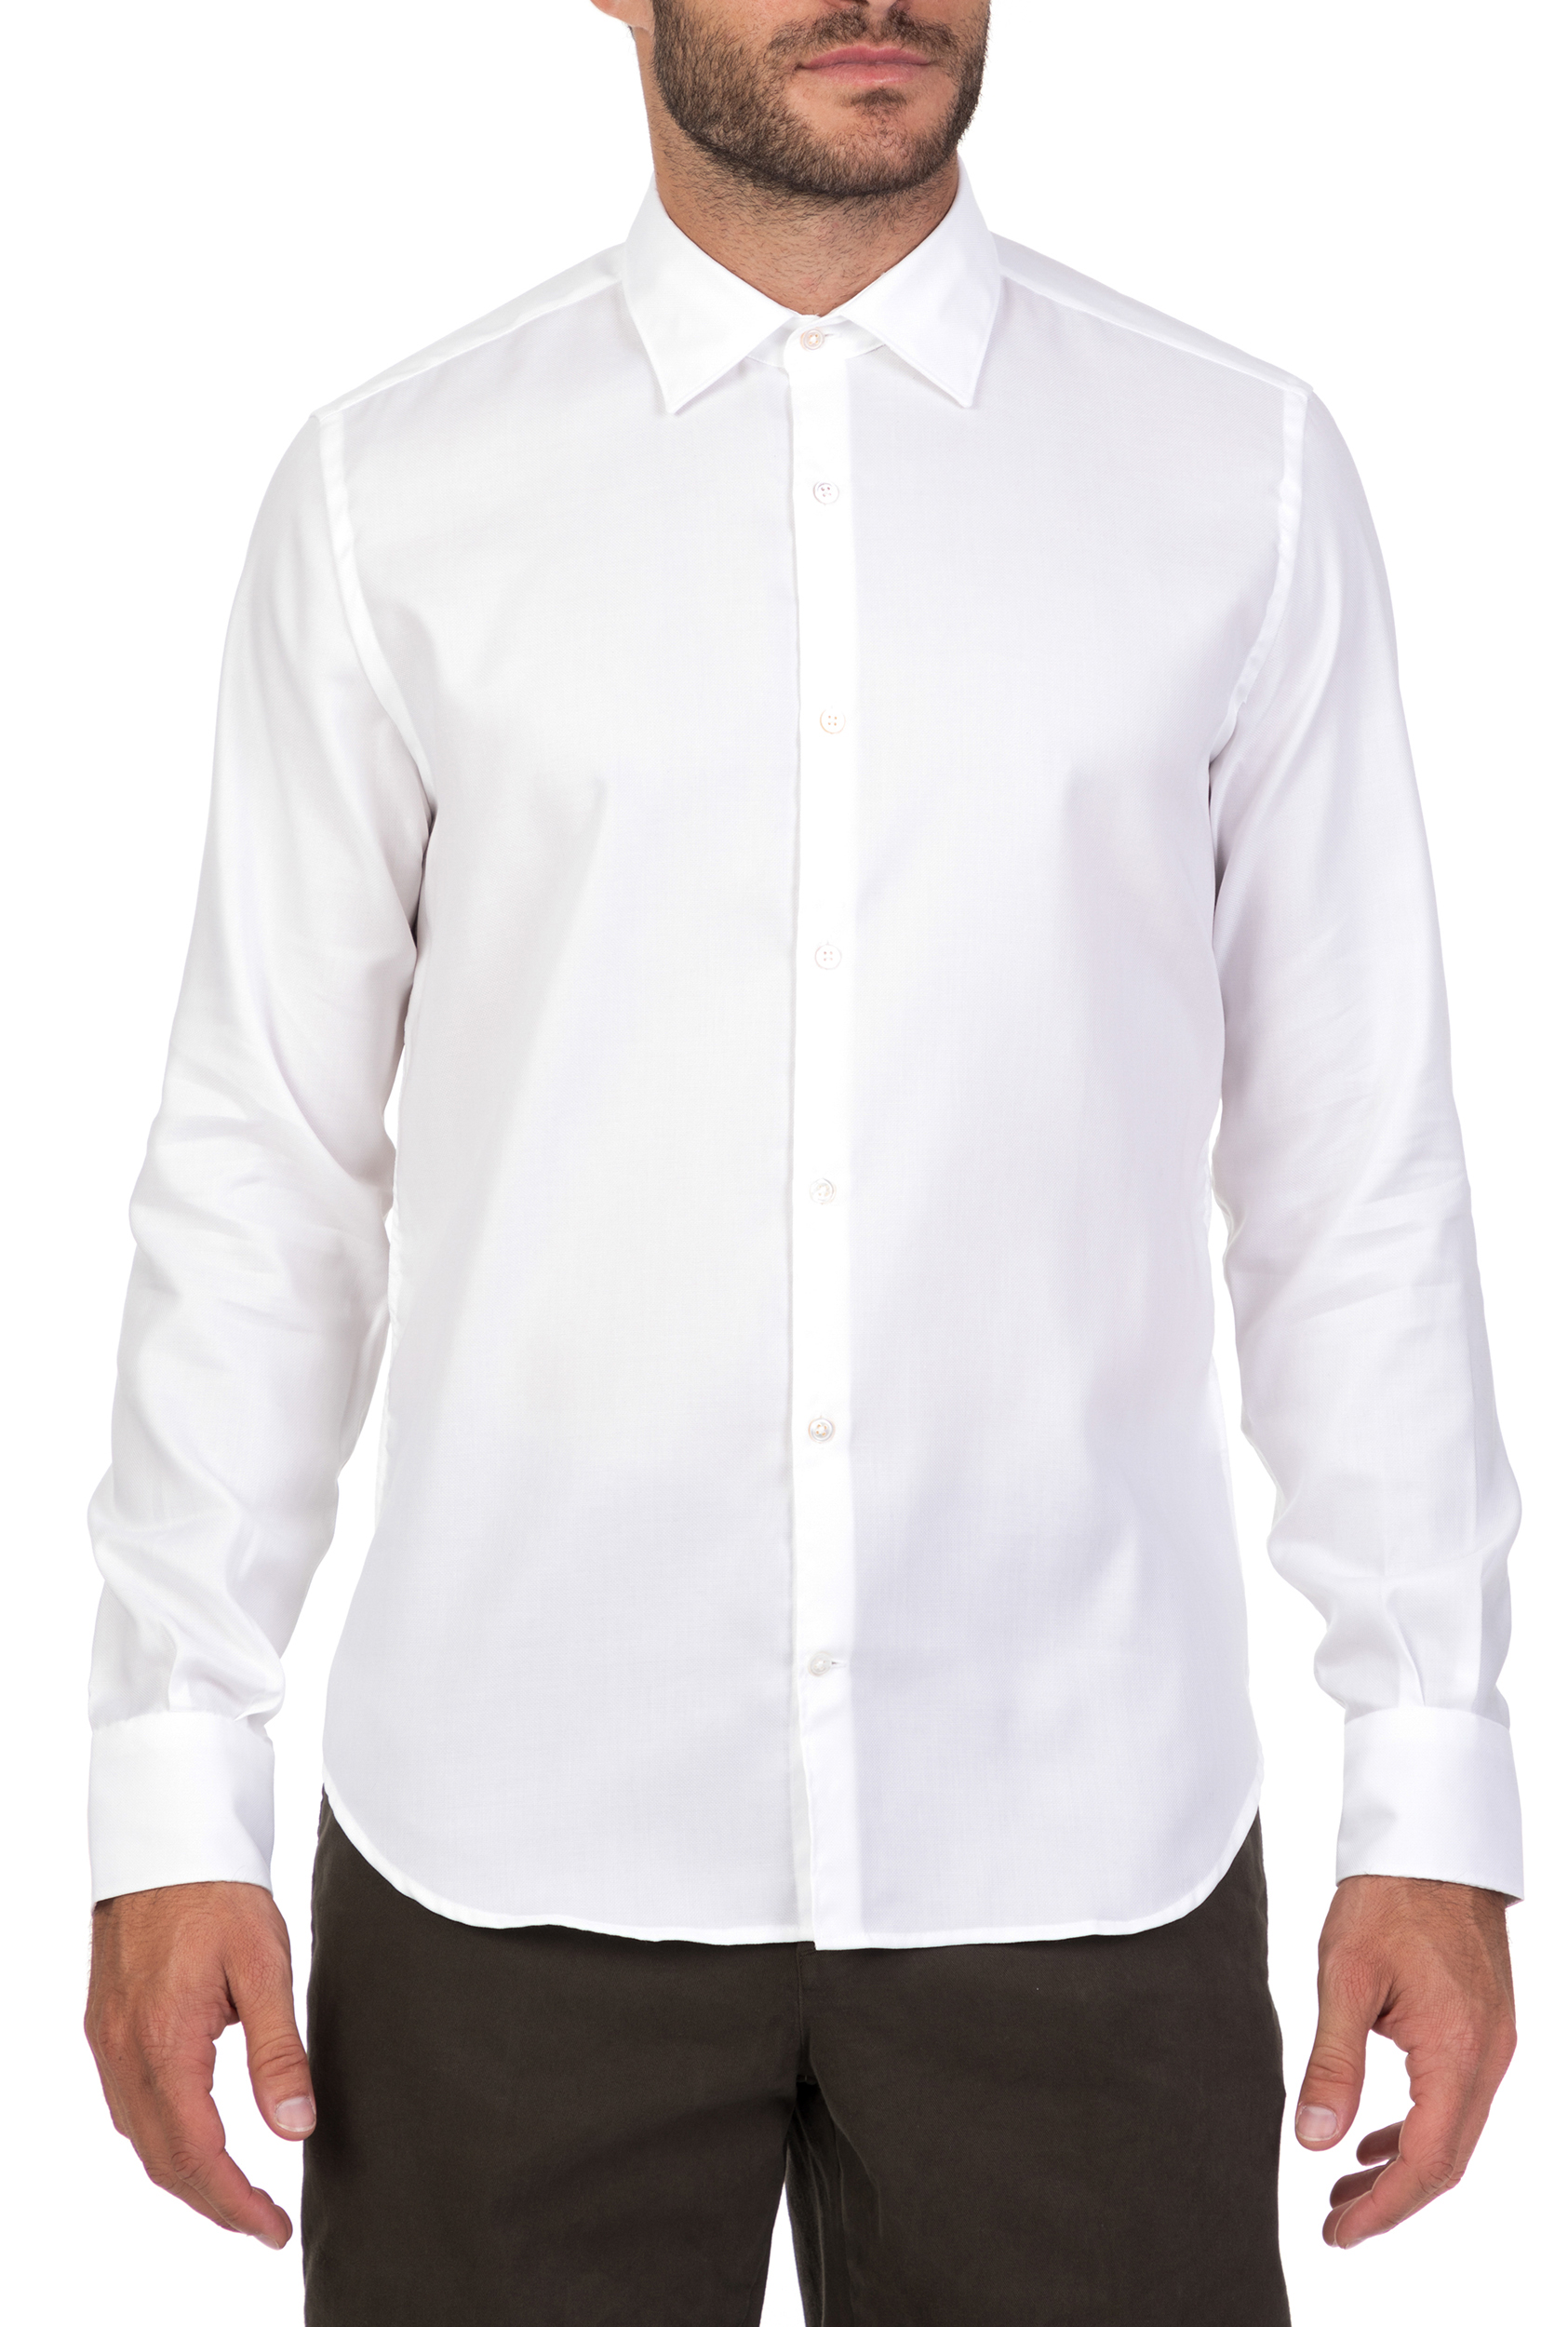 Ανδρικά/Ρούχα/Πουκάμισα/Μακρυμάνικα BROOKSFIELD - Ανδρικό μακρυμάνικο πουκάμισο BROOKSFIELD λευκό